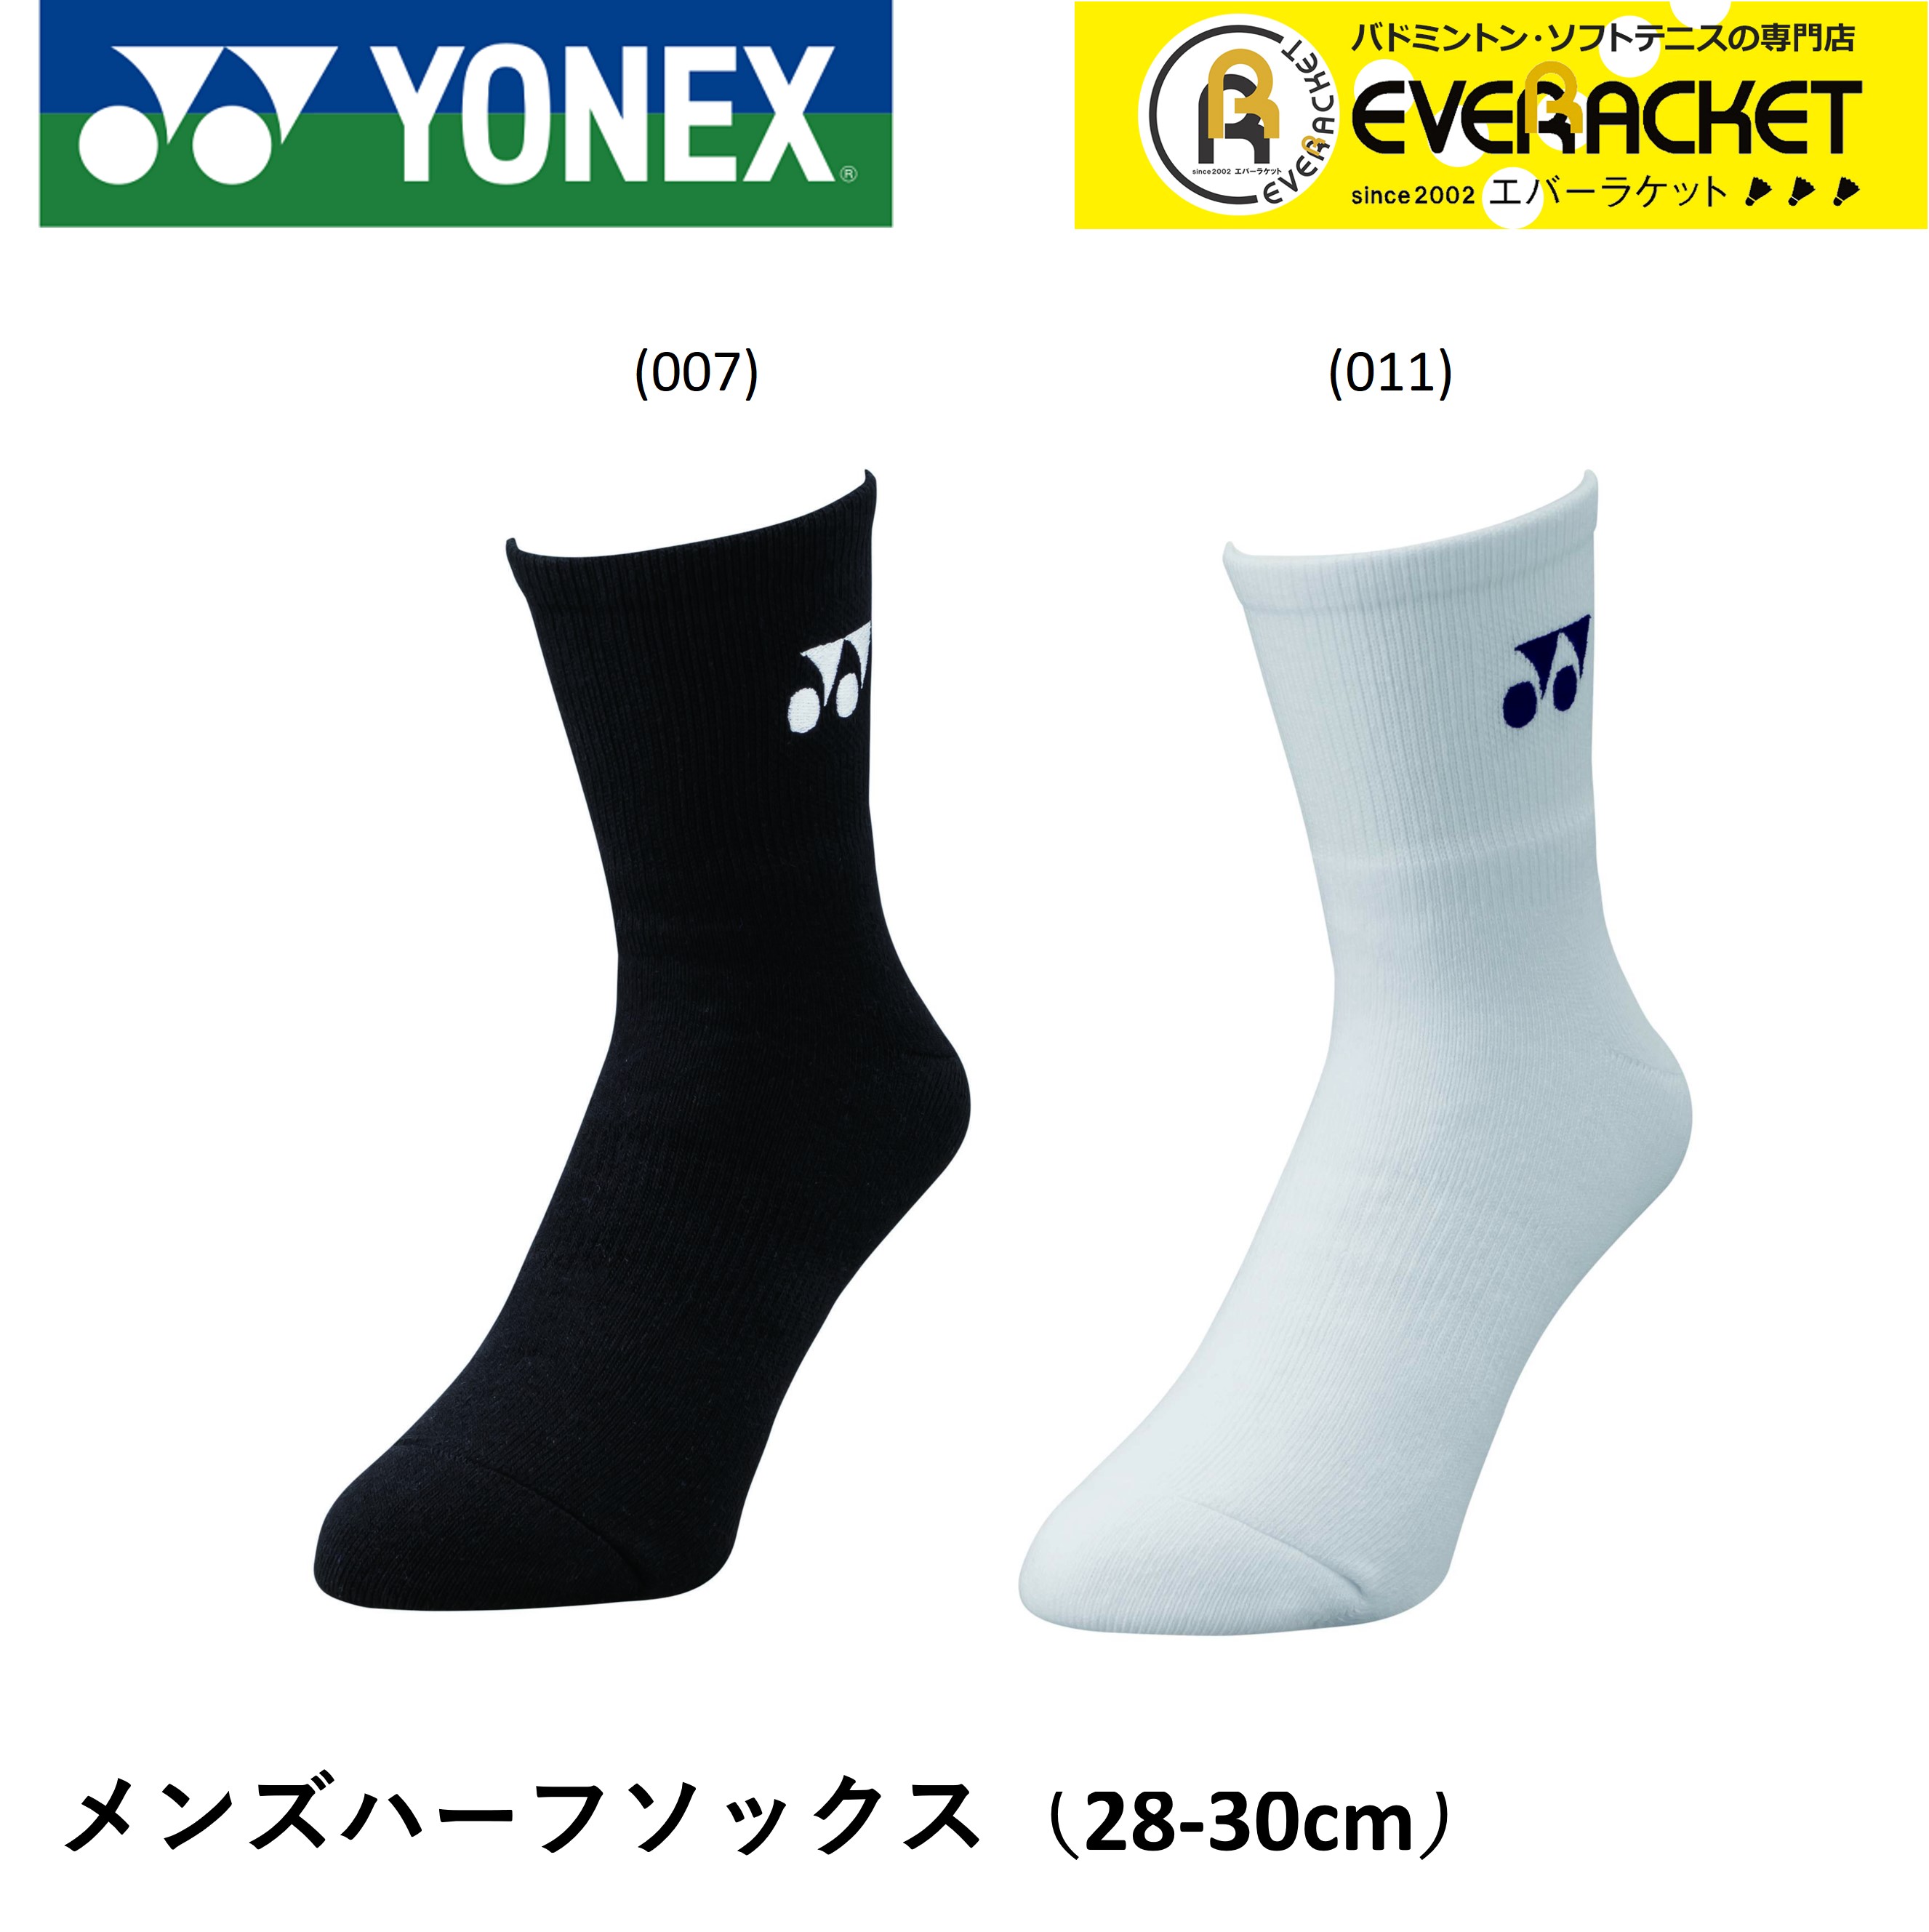 テニス ソックス メンズ ヨネックス 黒 白 スポーツソックス 靴下 防臭 日本製 19122L